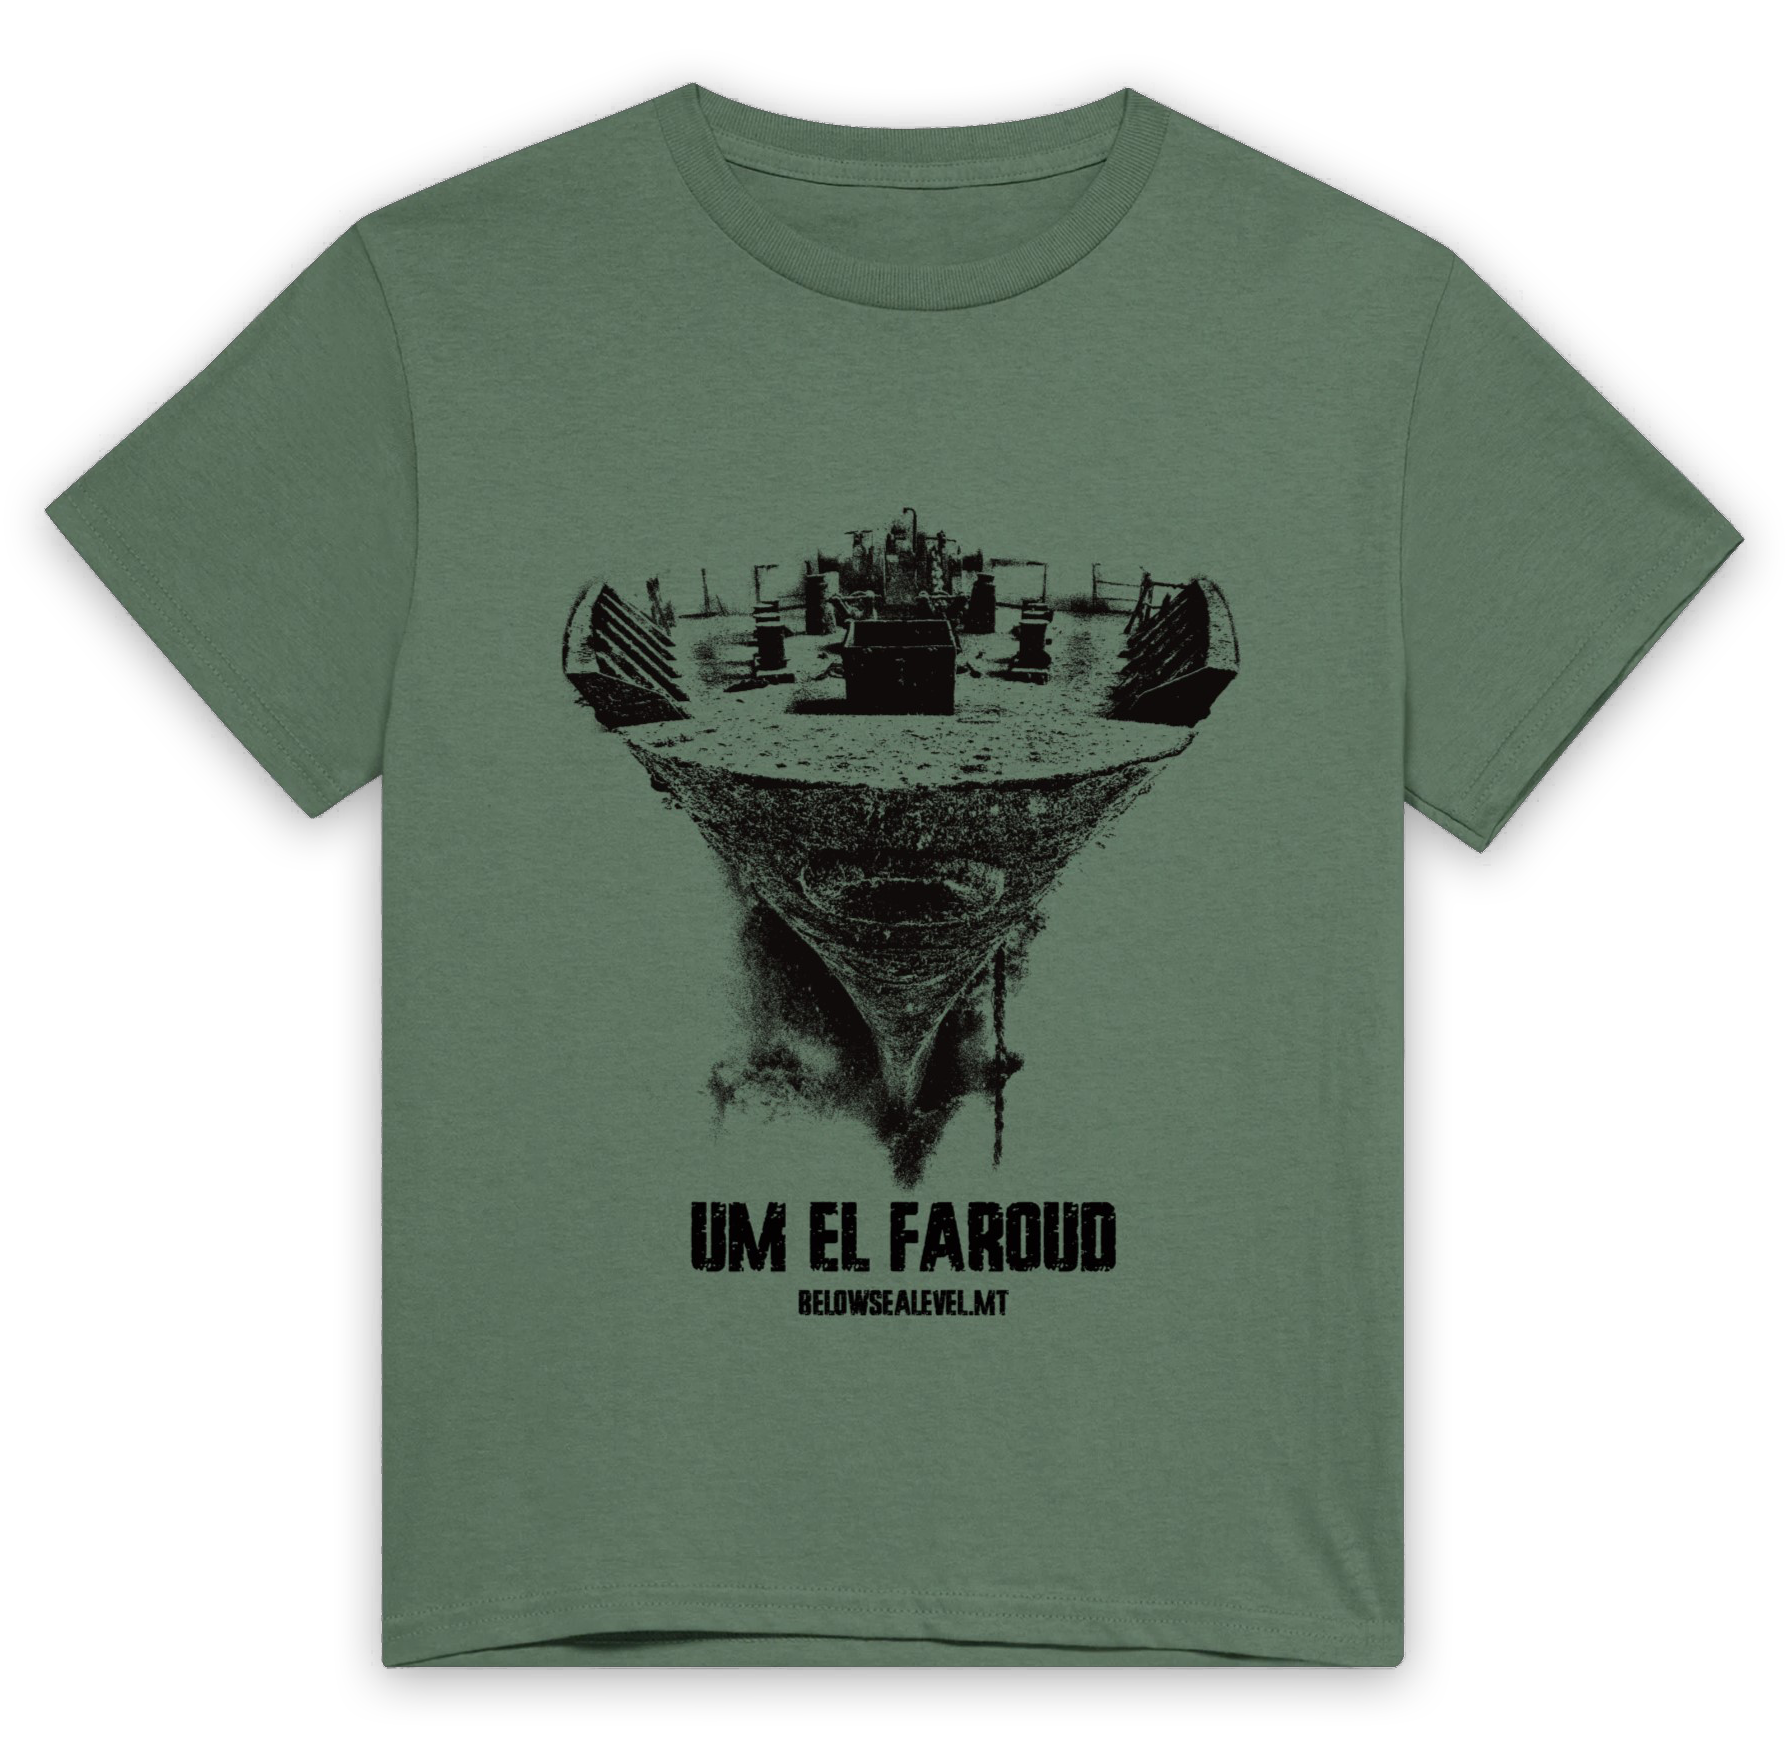 Um El Faroud wreck t-shirt